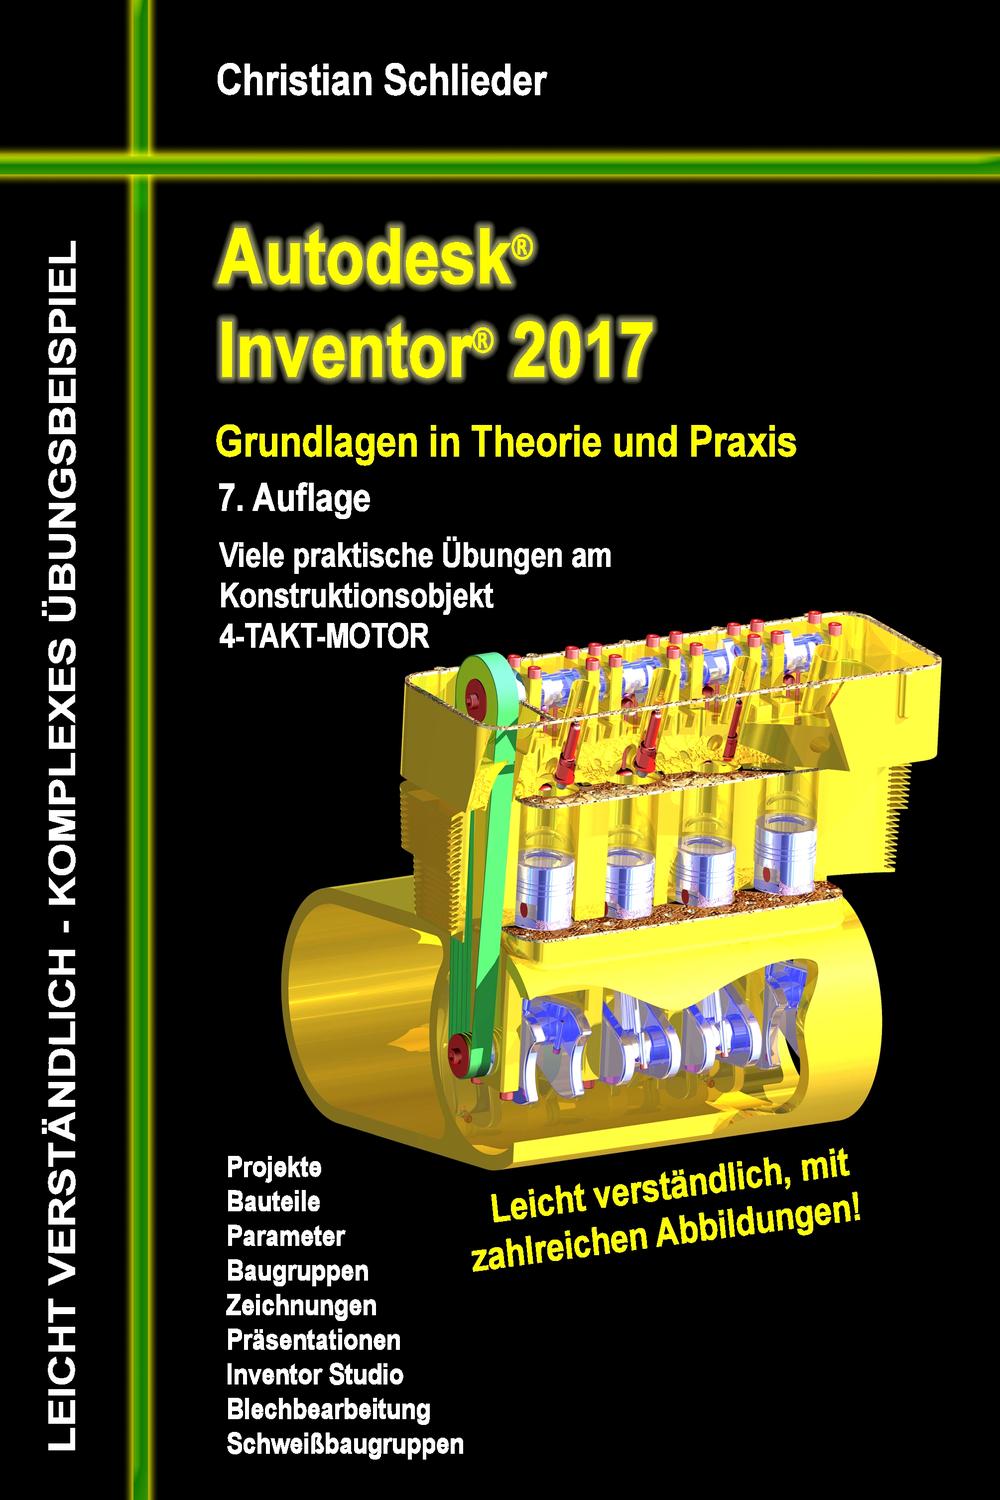 Autodesk Inventor 2017 - Grundlagen in Theorie und Praxis - Christian Schlieder